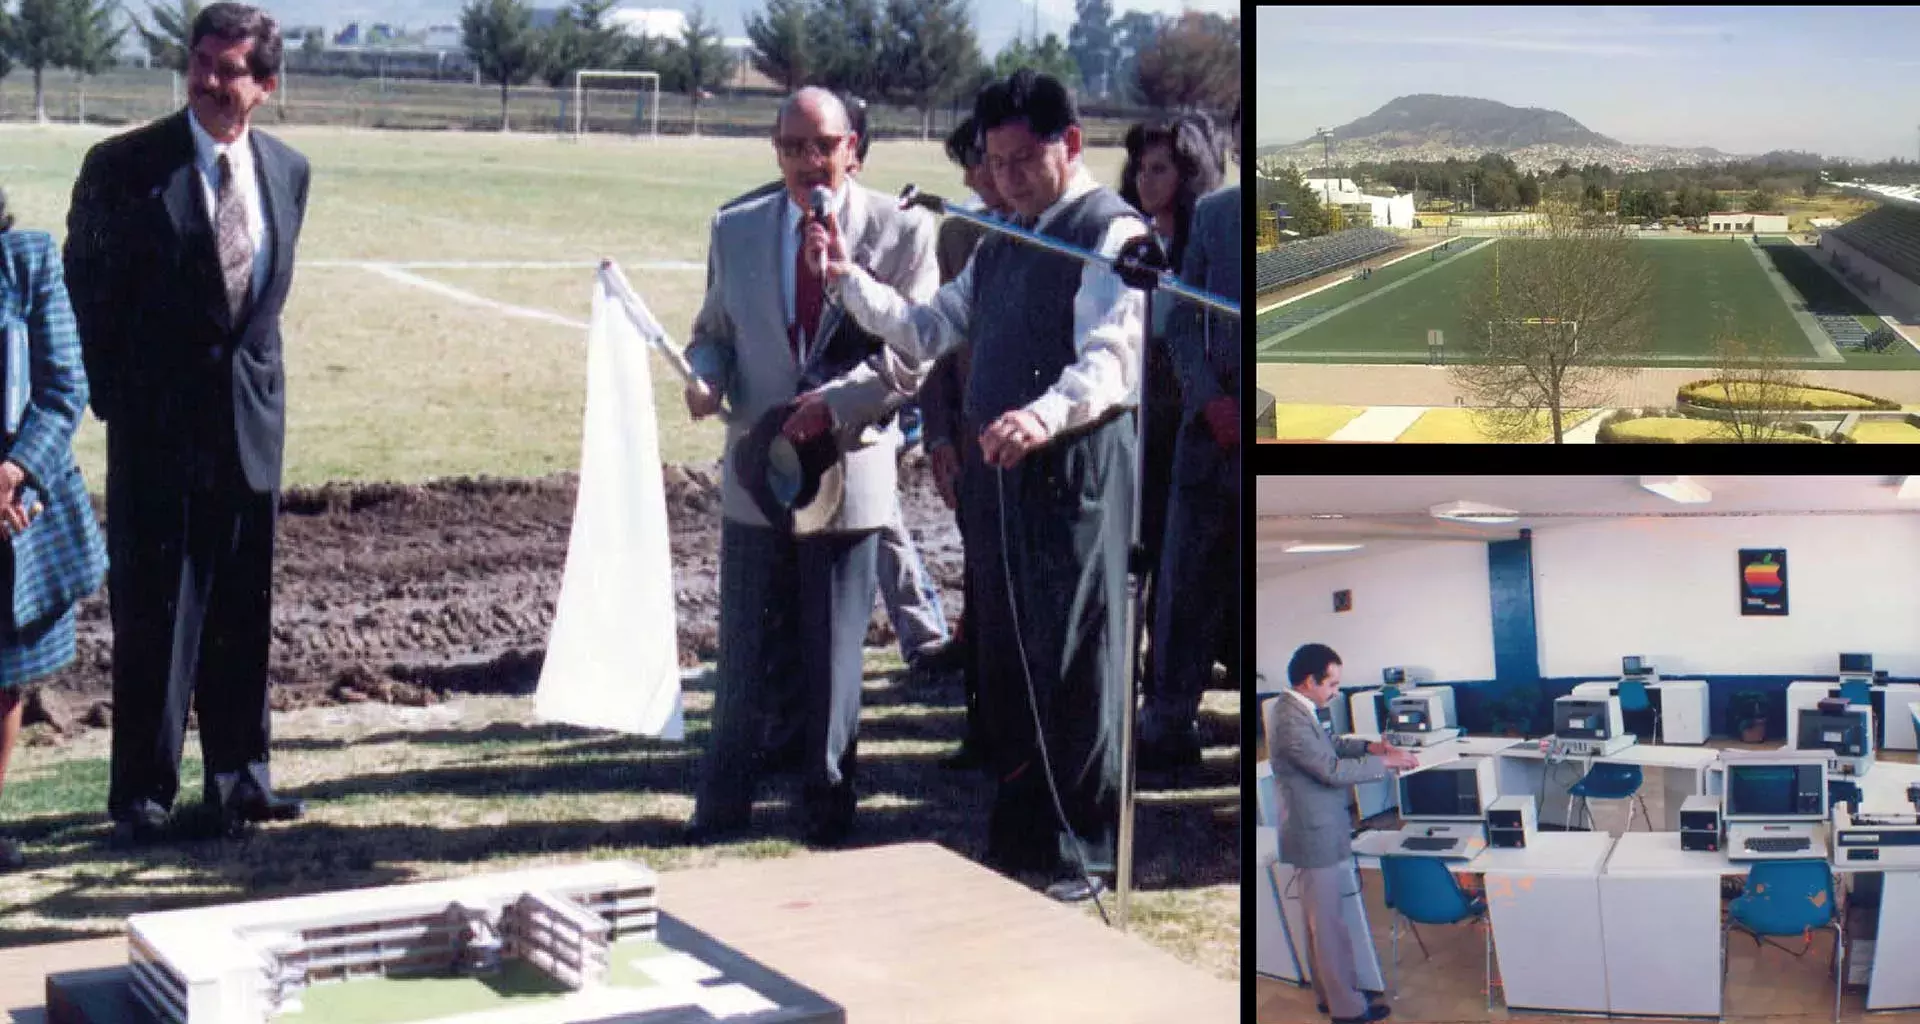 El 9 de agosto celebramos el 40 aniversario de la llegada del Tec de Monterrey a la ciudad de Toluca